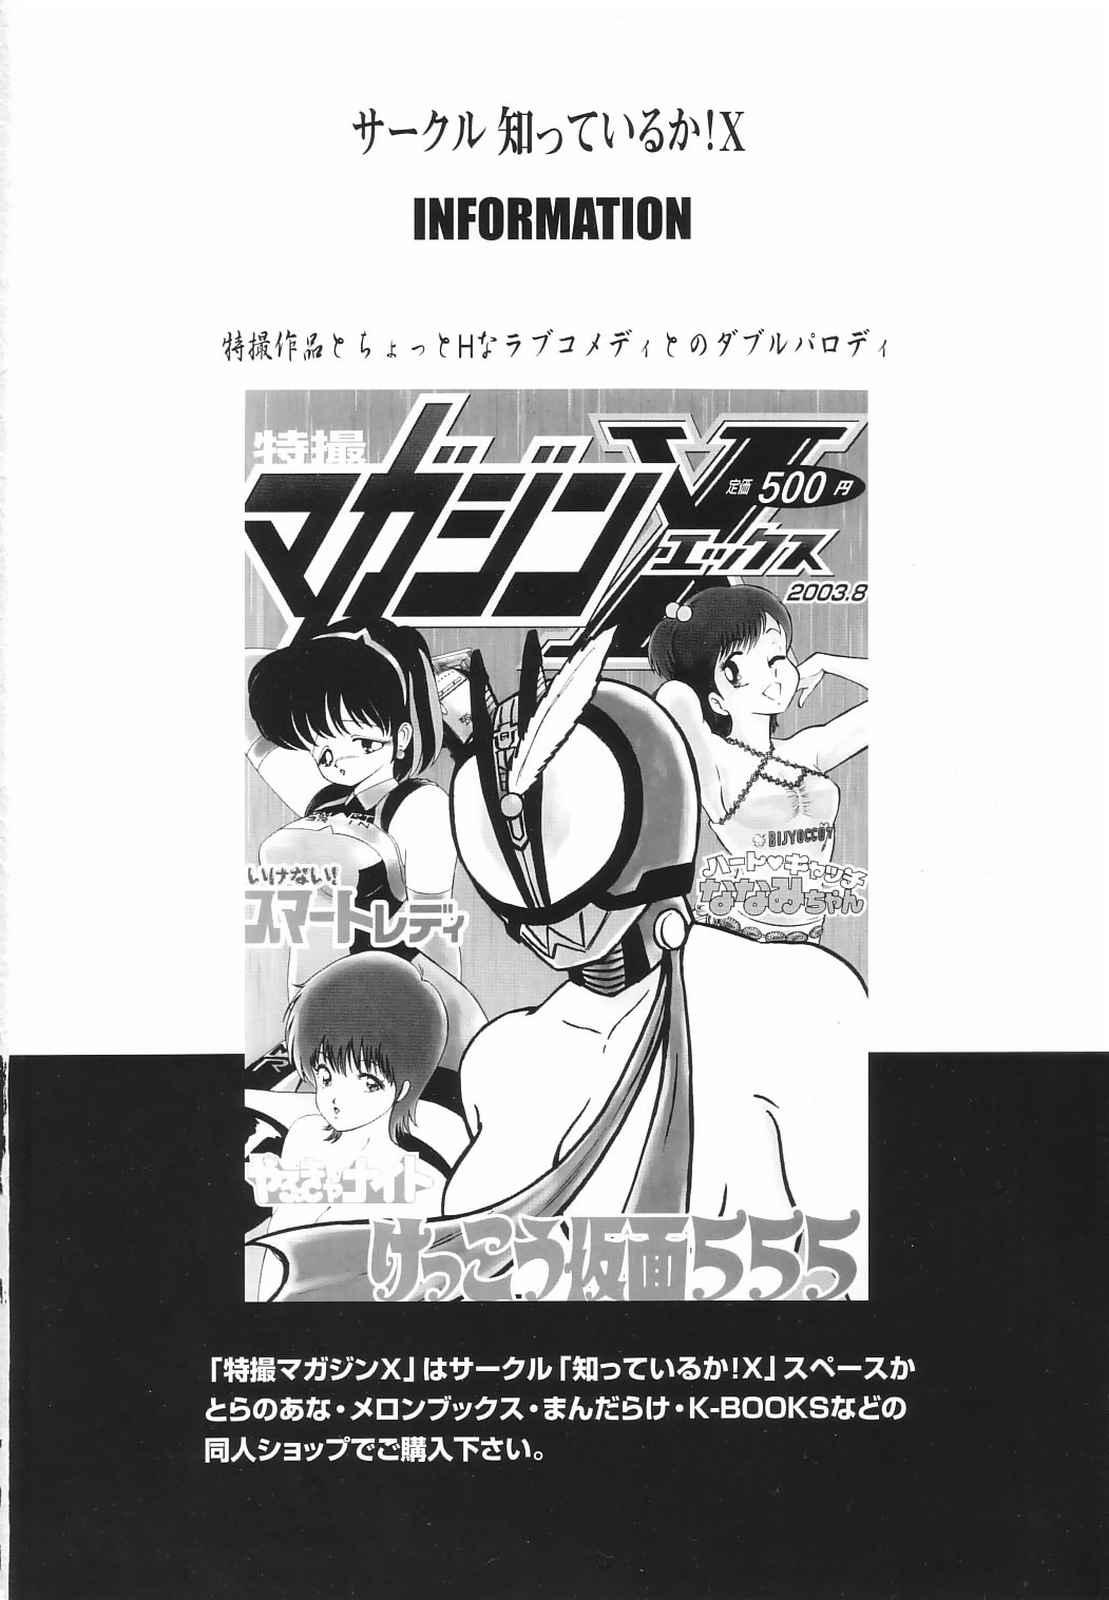 Porno Tokusatsu Magazine x 2003 Fuyu Gou - Sailor moon Ichigo 100 Police - Page 2